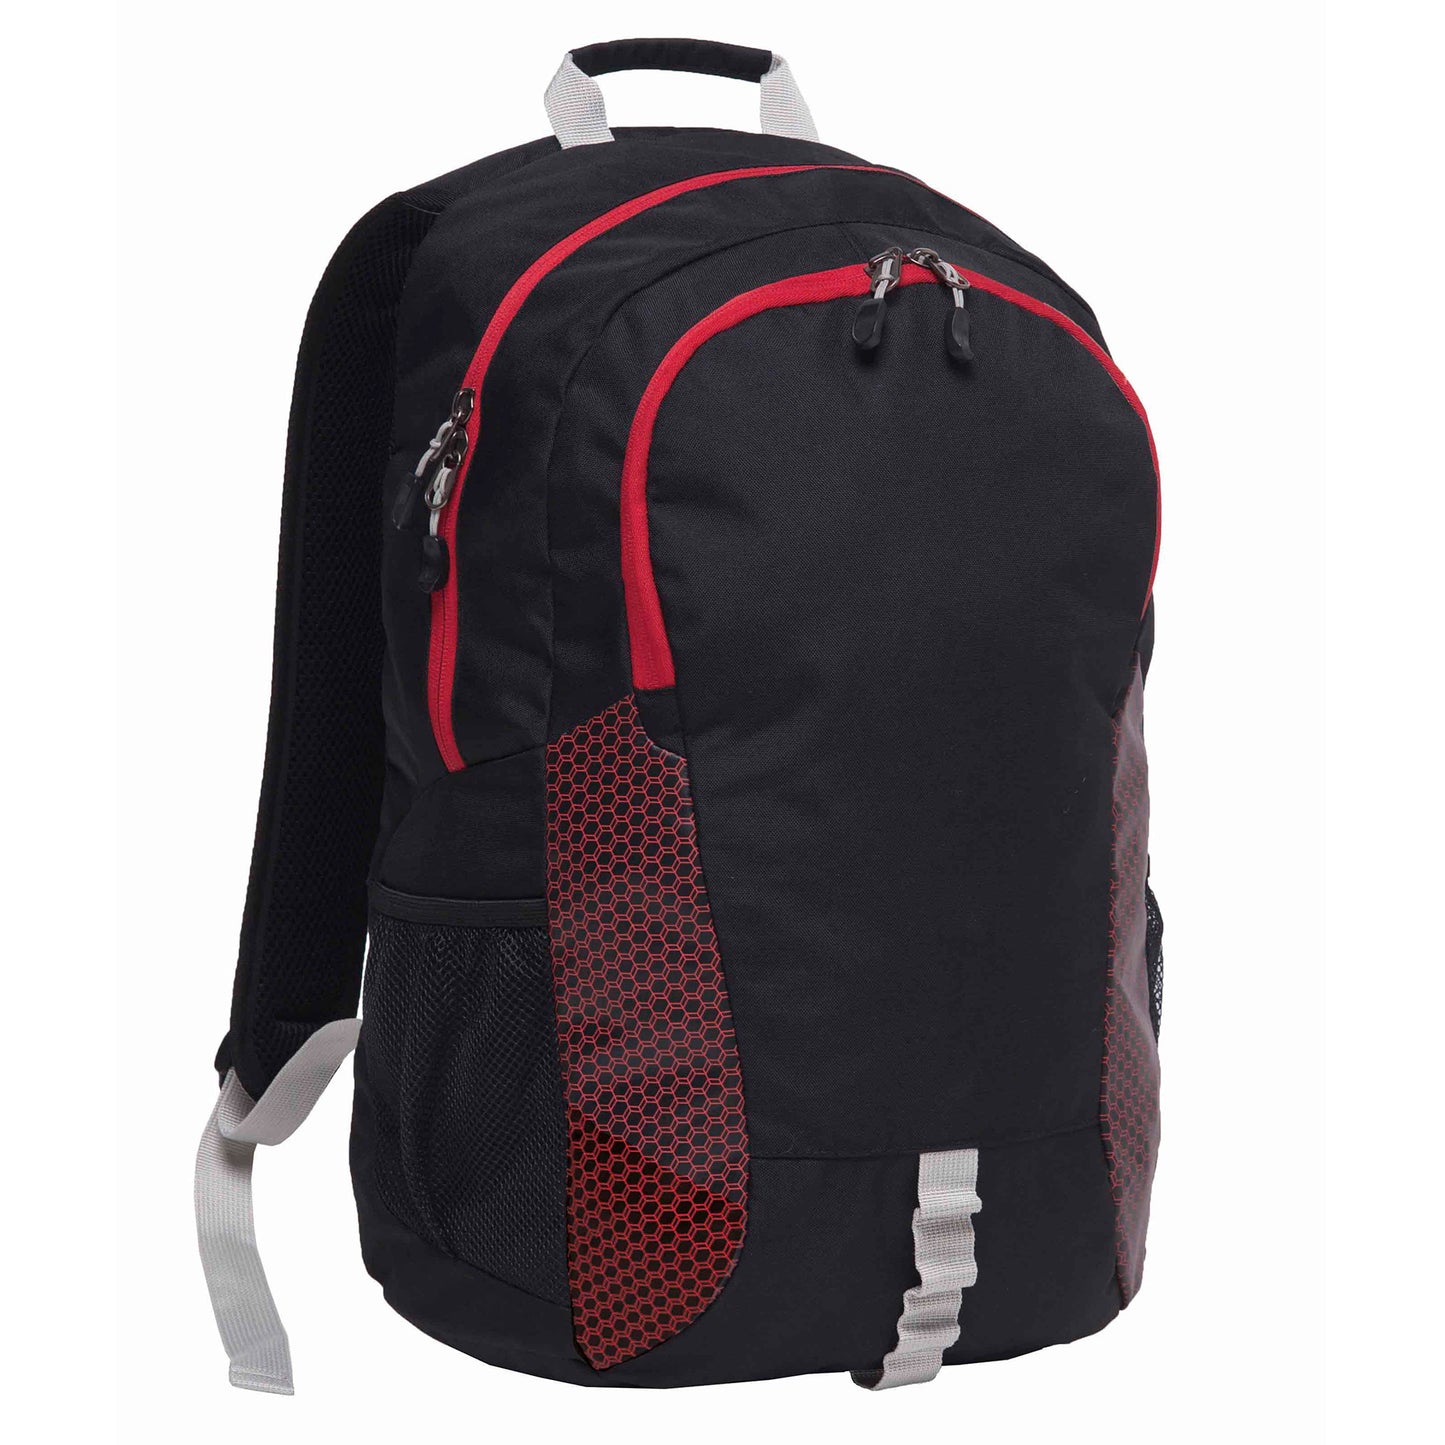 Grommet Backpack BGMB